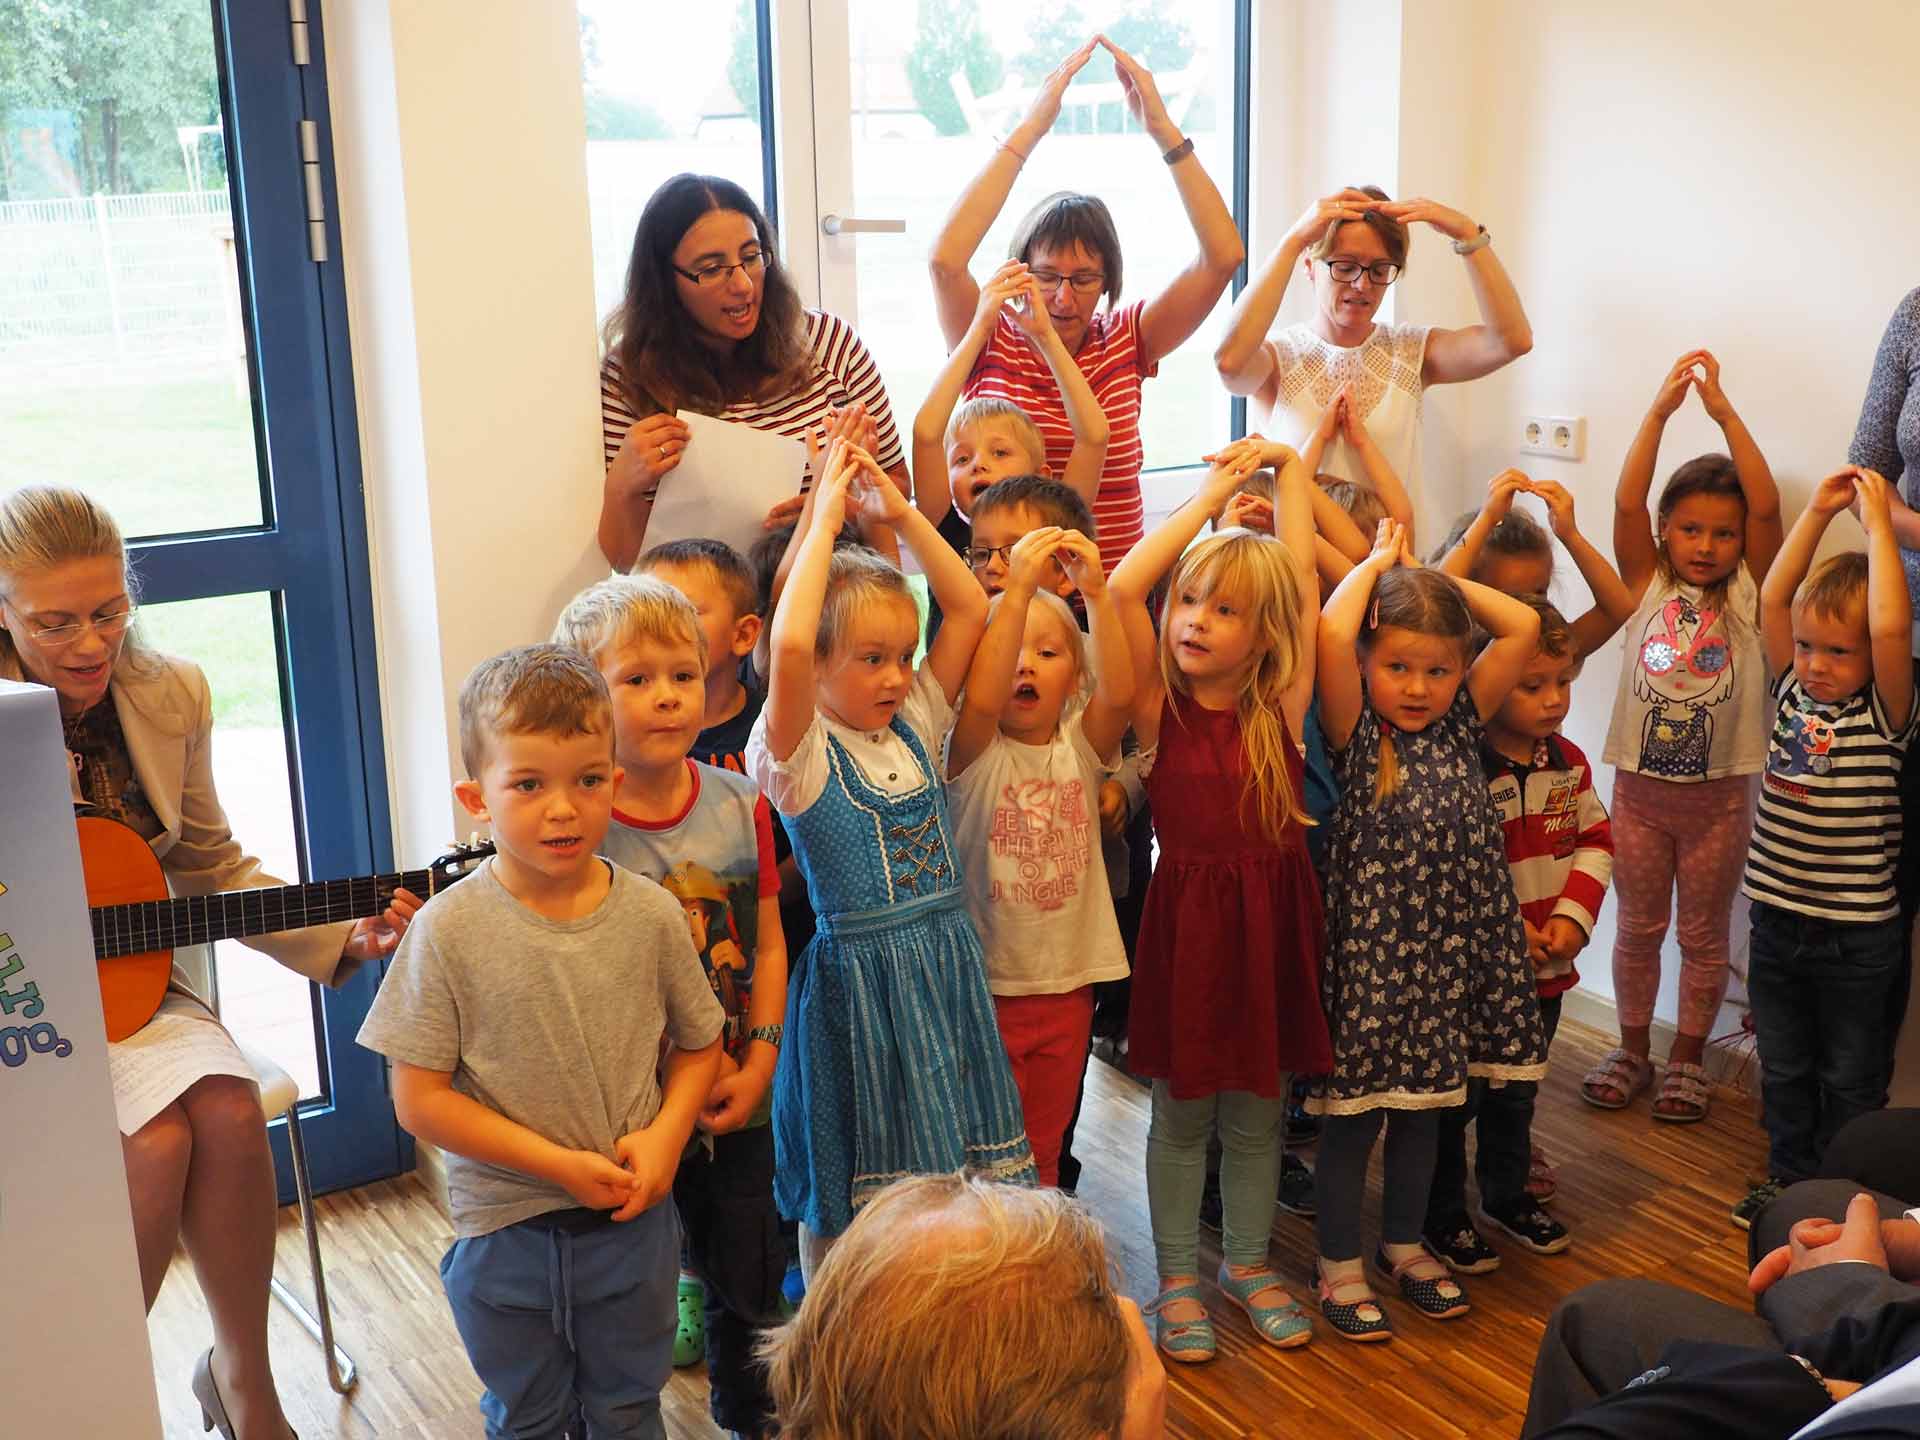 Die Kinder vom Kindergarten Zwergenland sangen ein Lied für die Gäste (Foto: br-medienagentur)